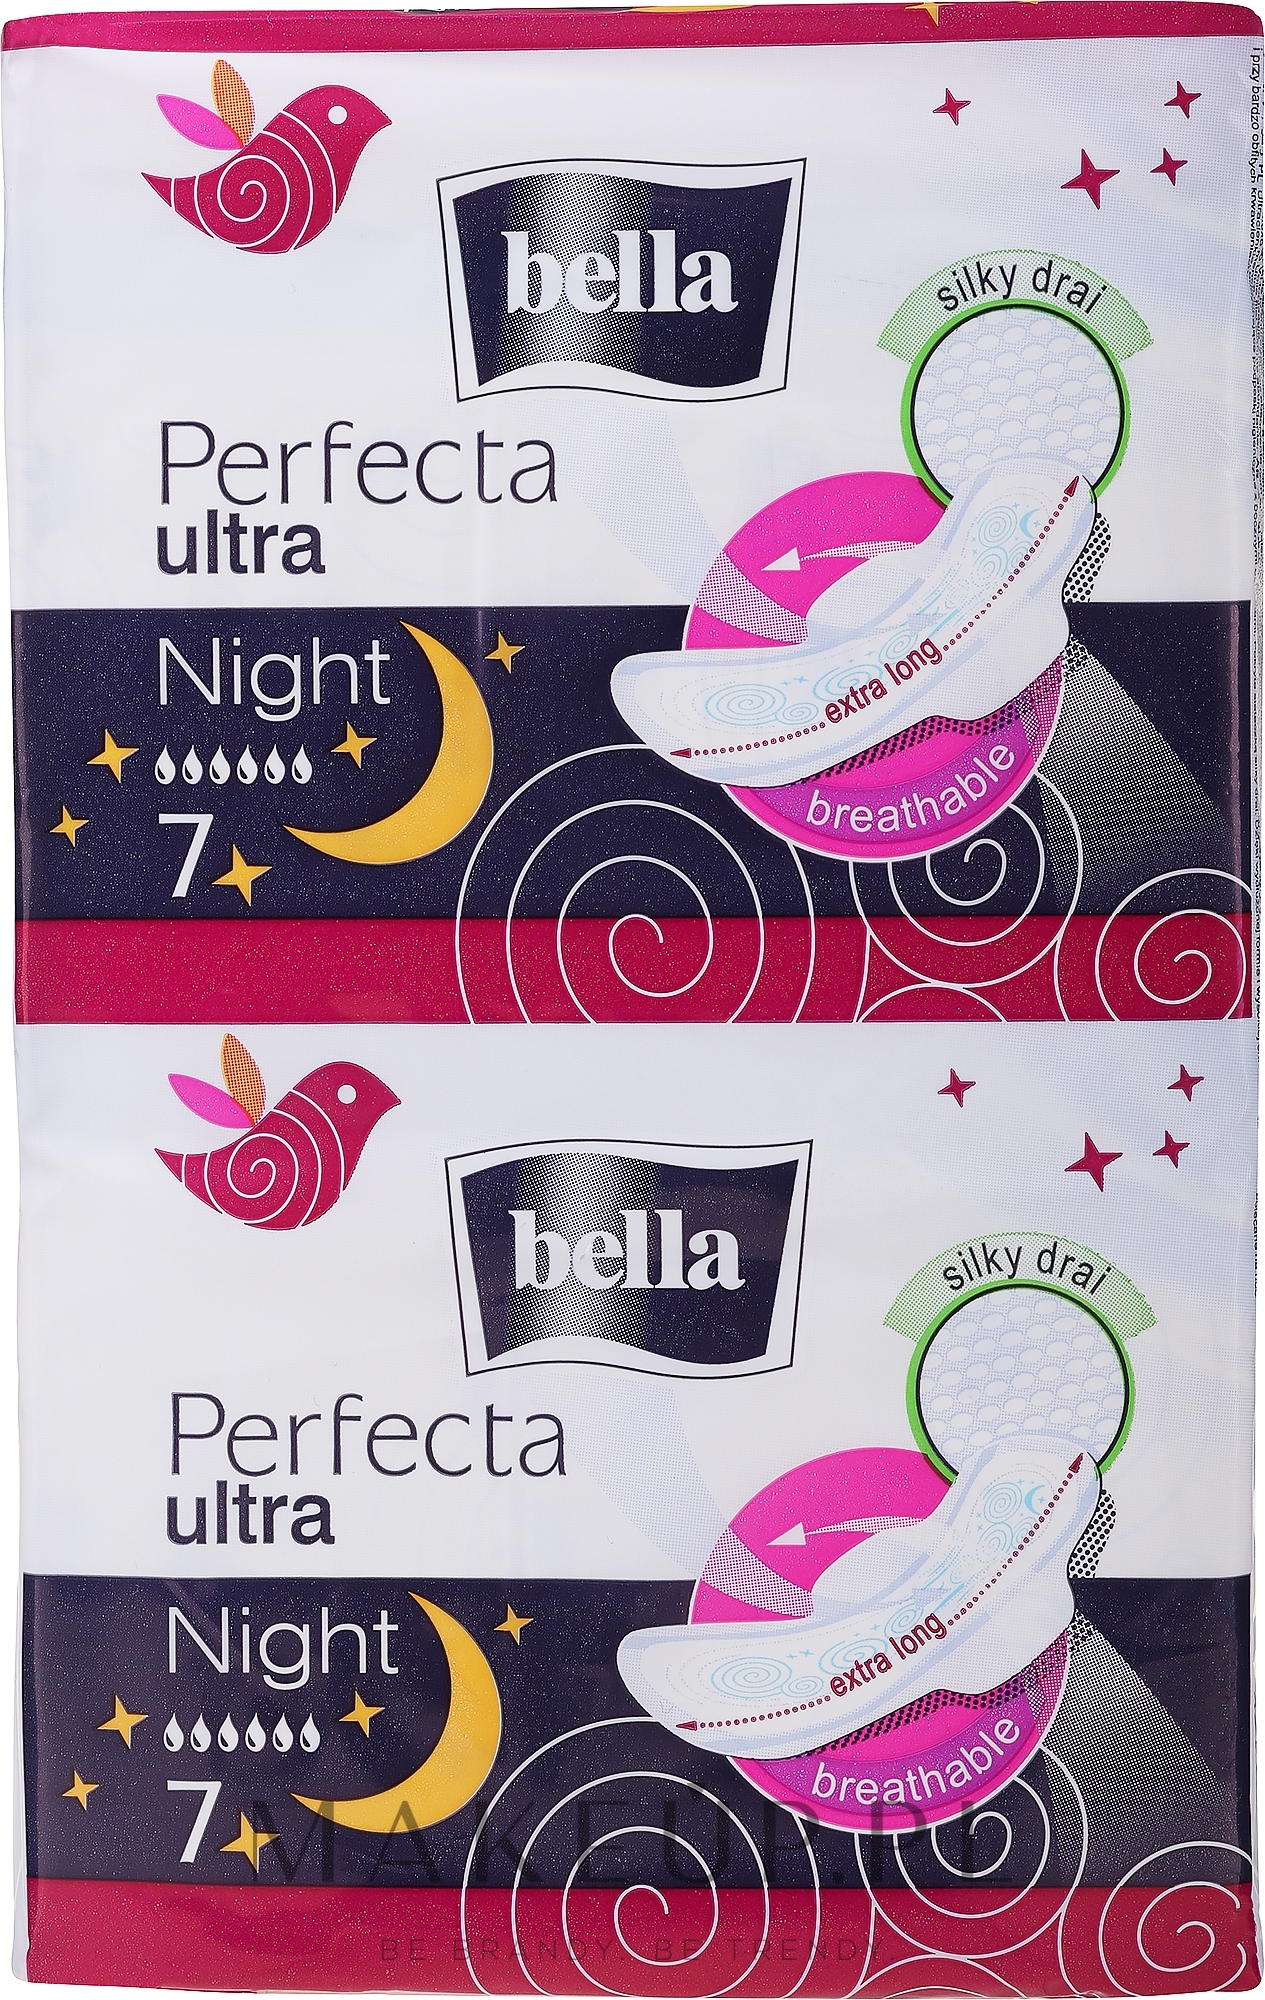 Podpaski Perfecta Ultra Night Silky Drai, 7+7 szt. - Bella  — Zdjęcie 14 szt.